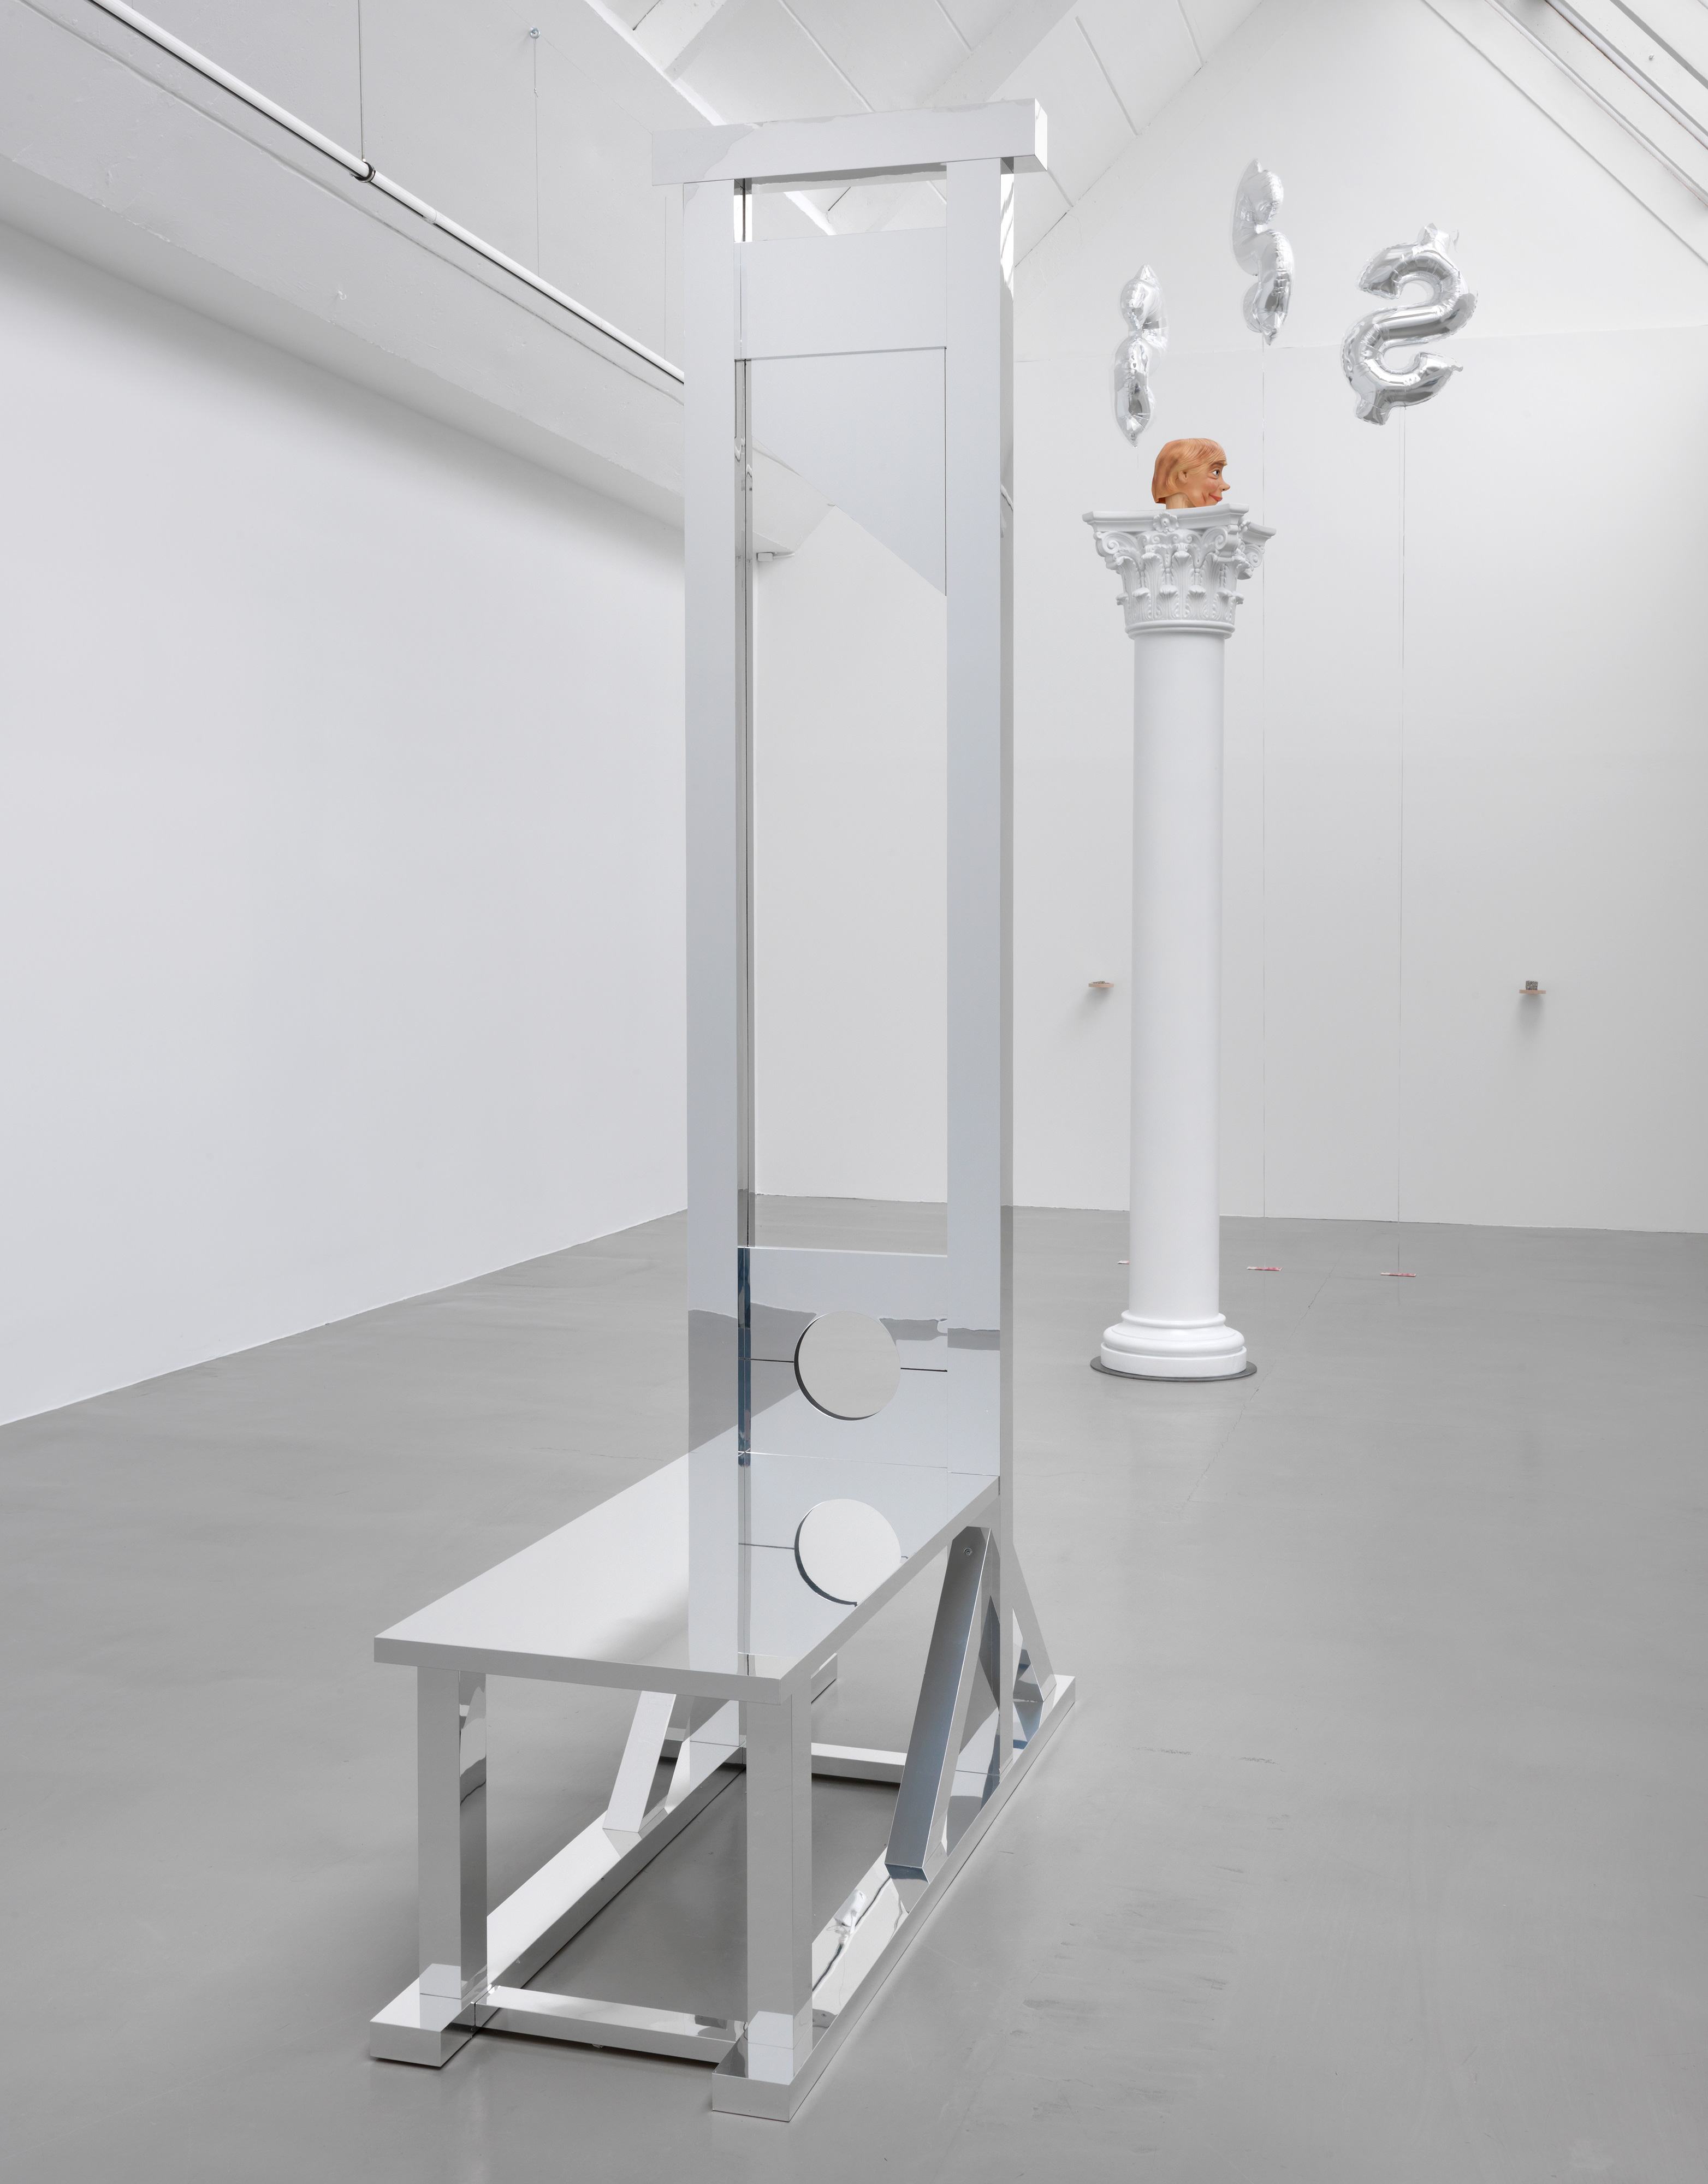 Galerie Barbara Thumm \ Jota Castro – AUSTERITY ÜBER ALLES